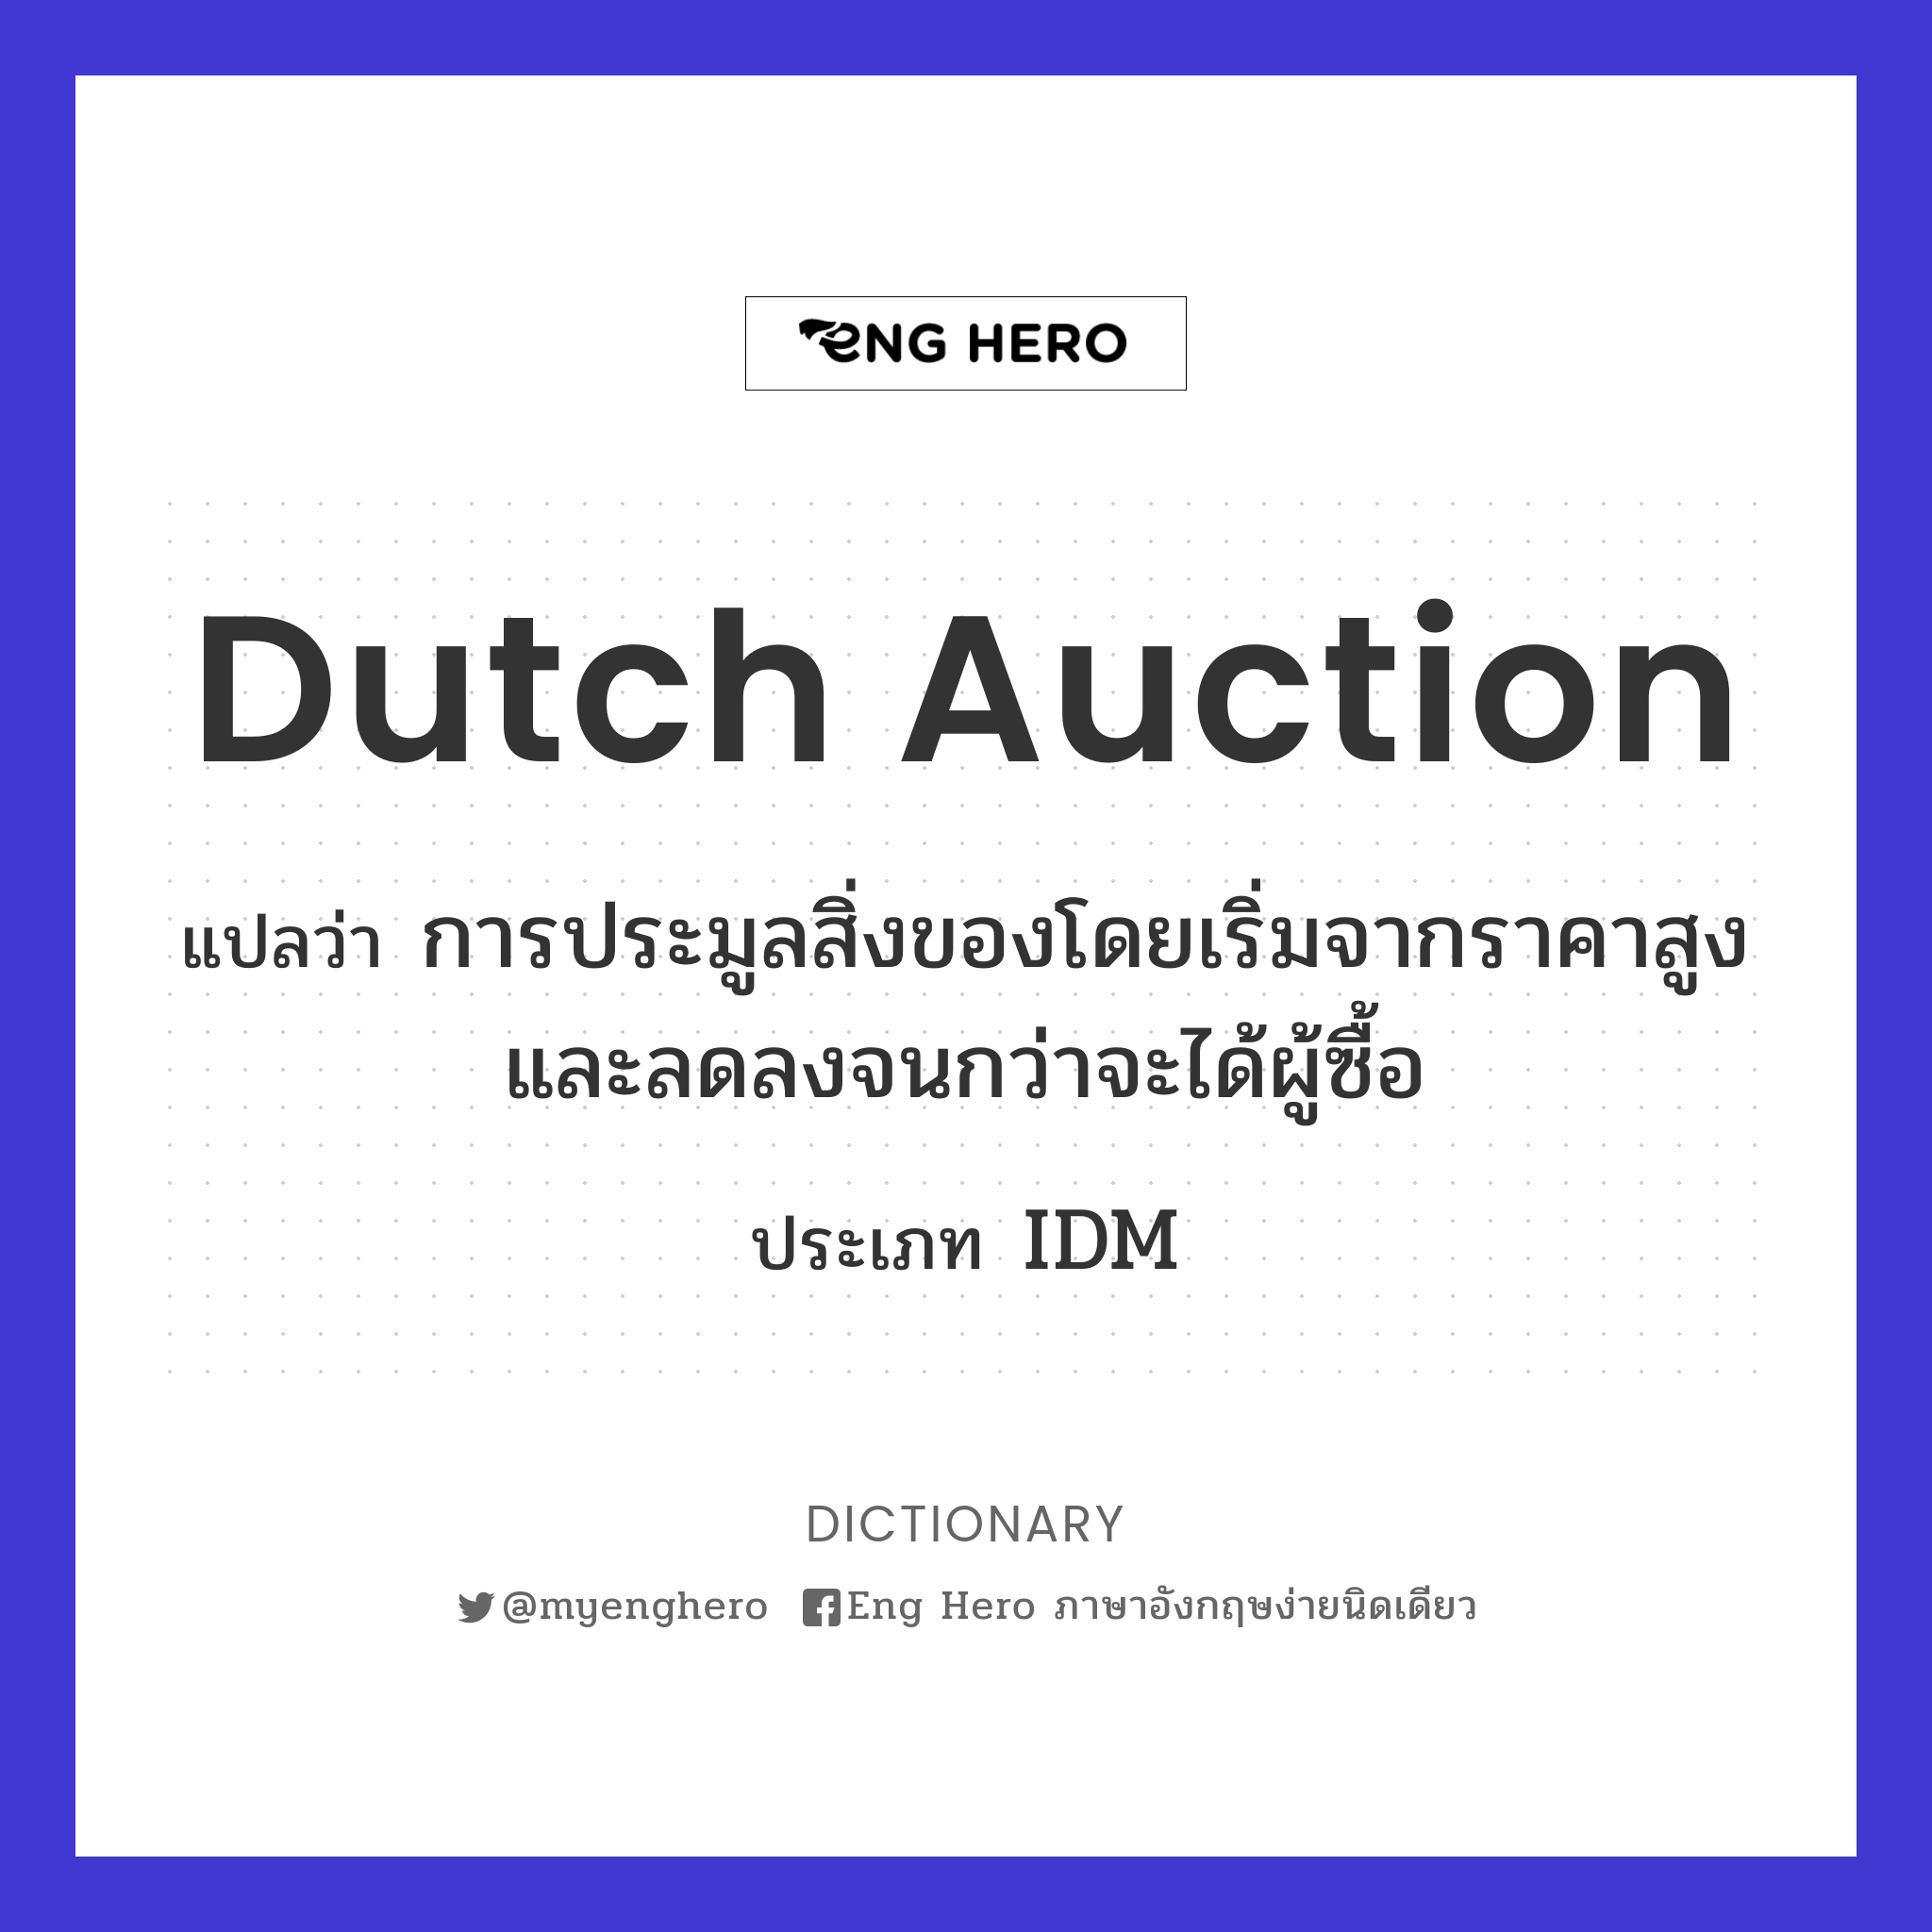 Dutch auction